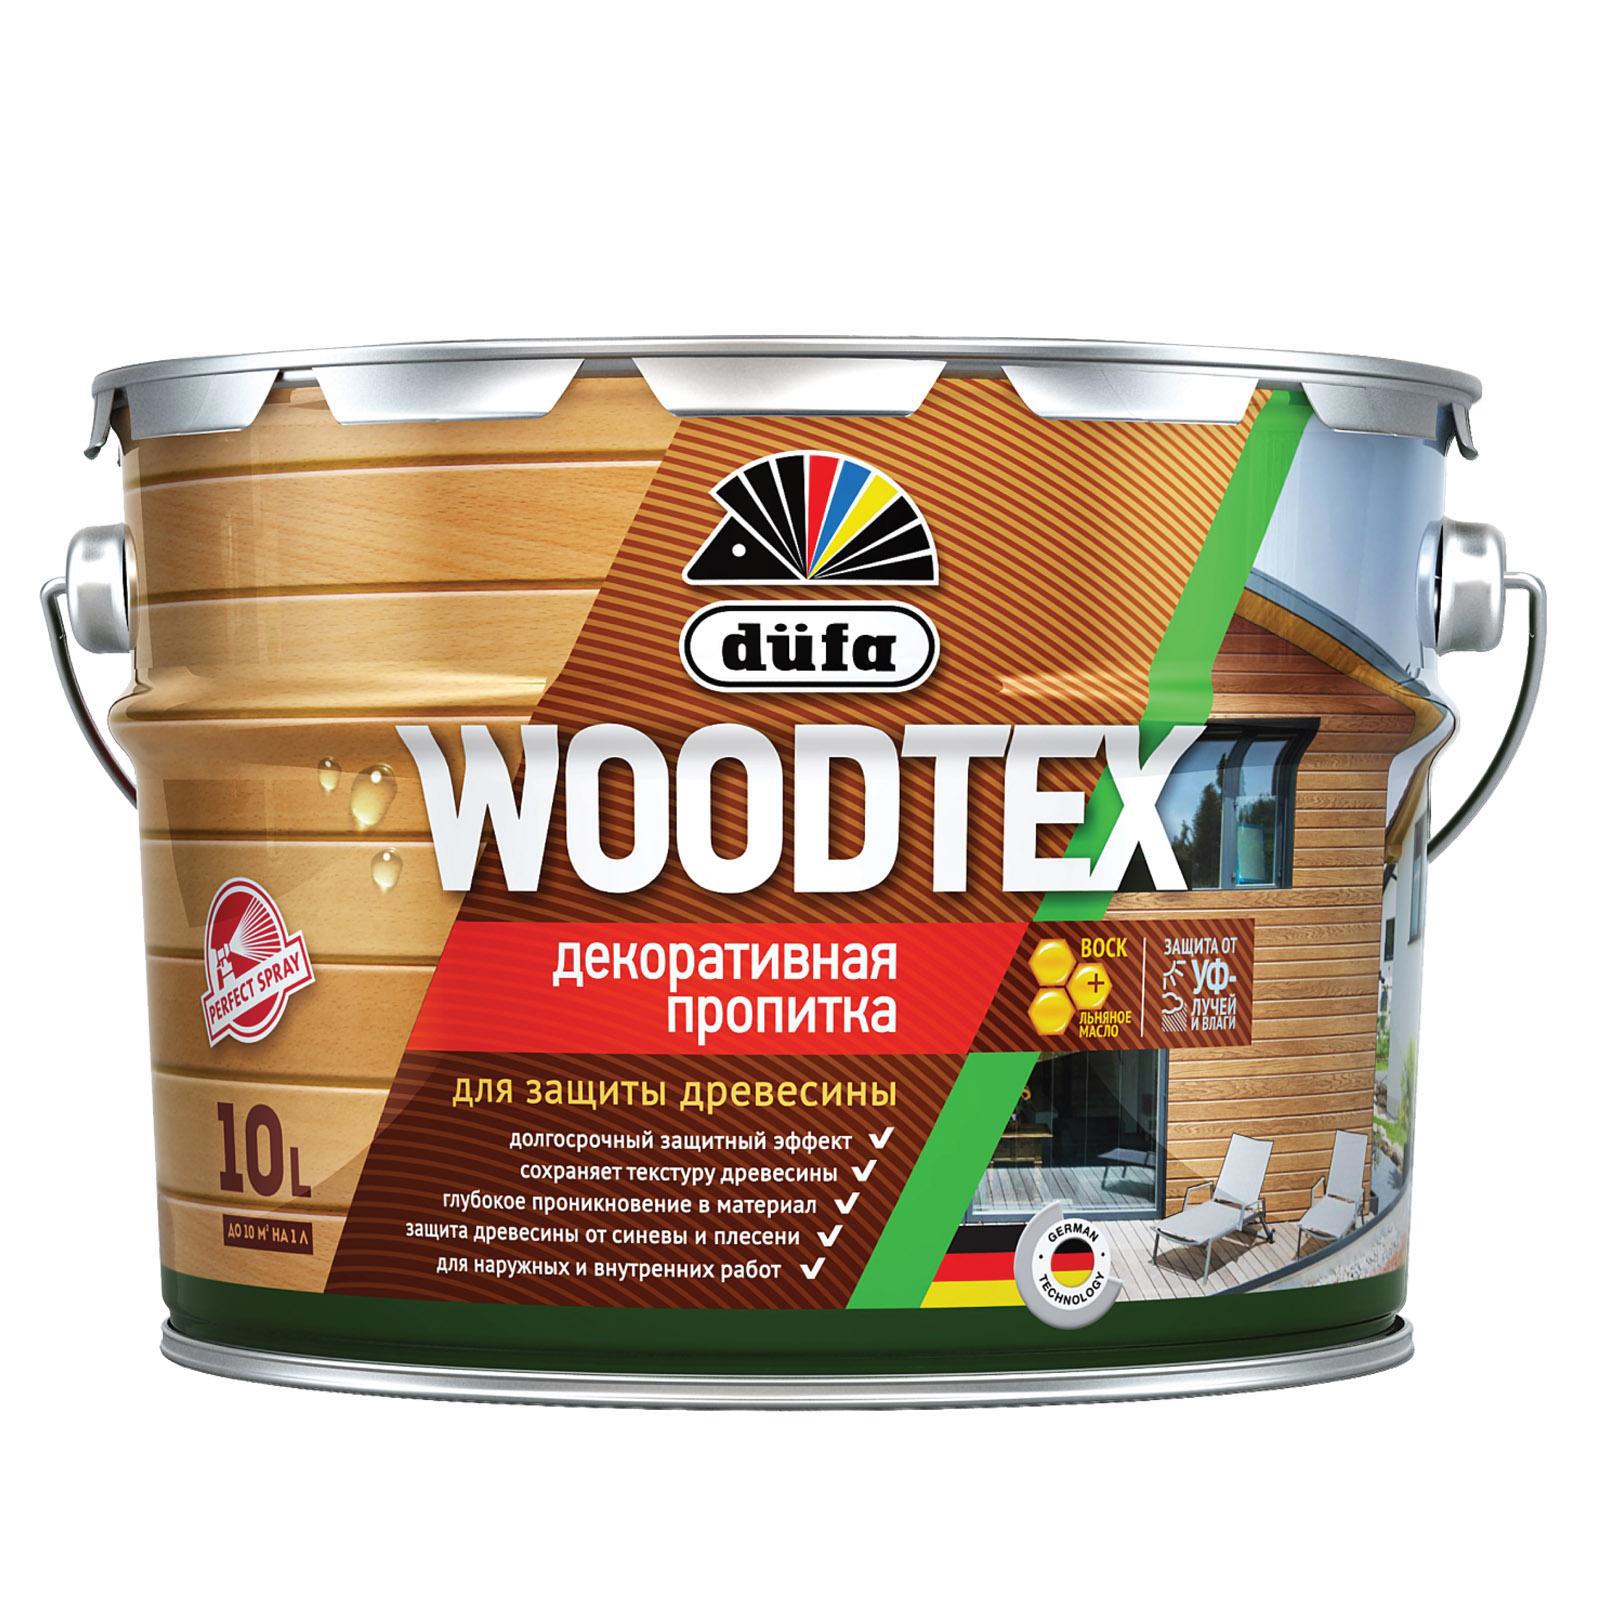 90194540 Пропитка декоративная для защиты древесины алкидная Woodtex бесцветная 10 л STLM-0128472 DUFA